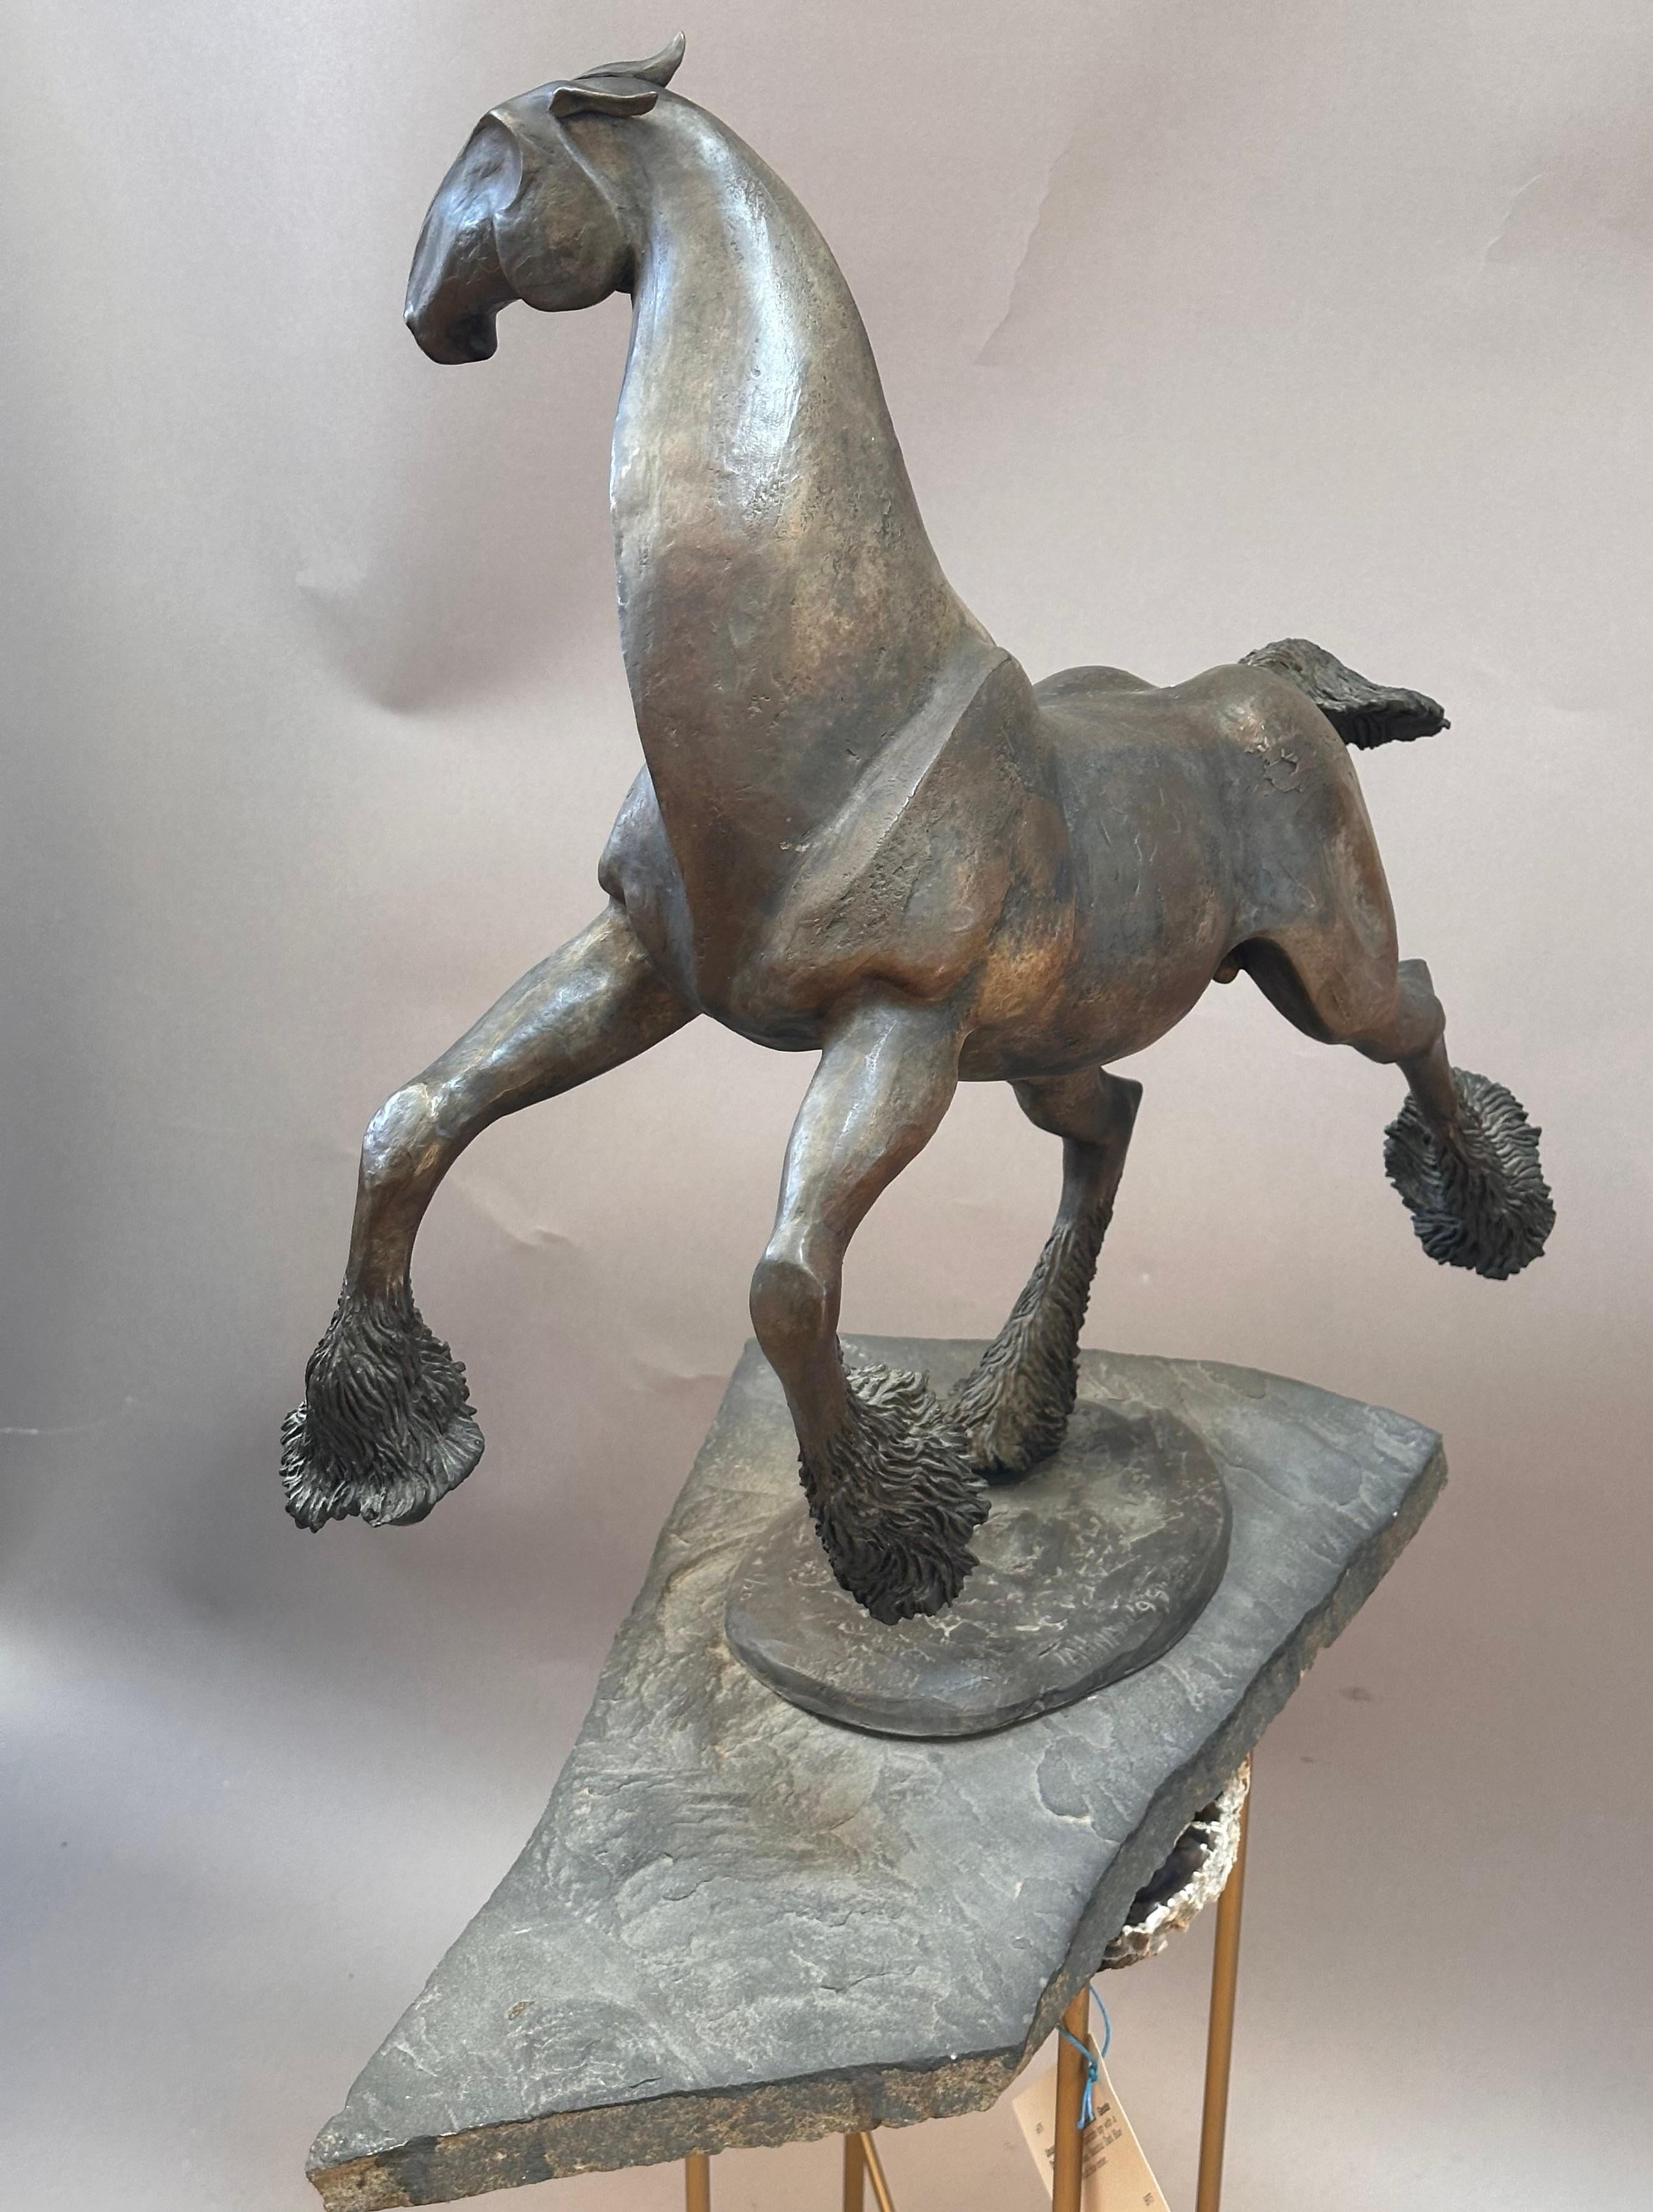 Cast Unique Bronze Horse Sculpture by Tahna cast 1999 Titled “Elan” For Sale